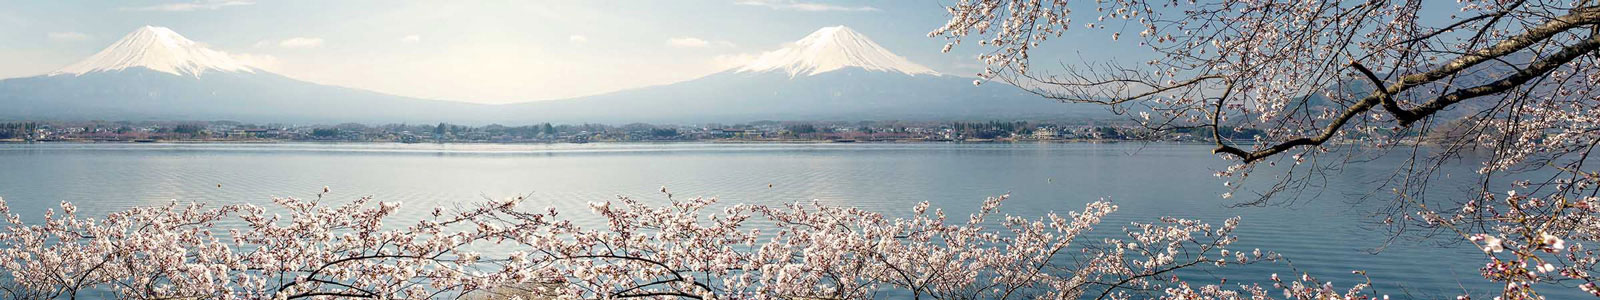 №3844 - Цветение вишни у озера на фоне Фуджи (Фудзияма)